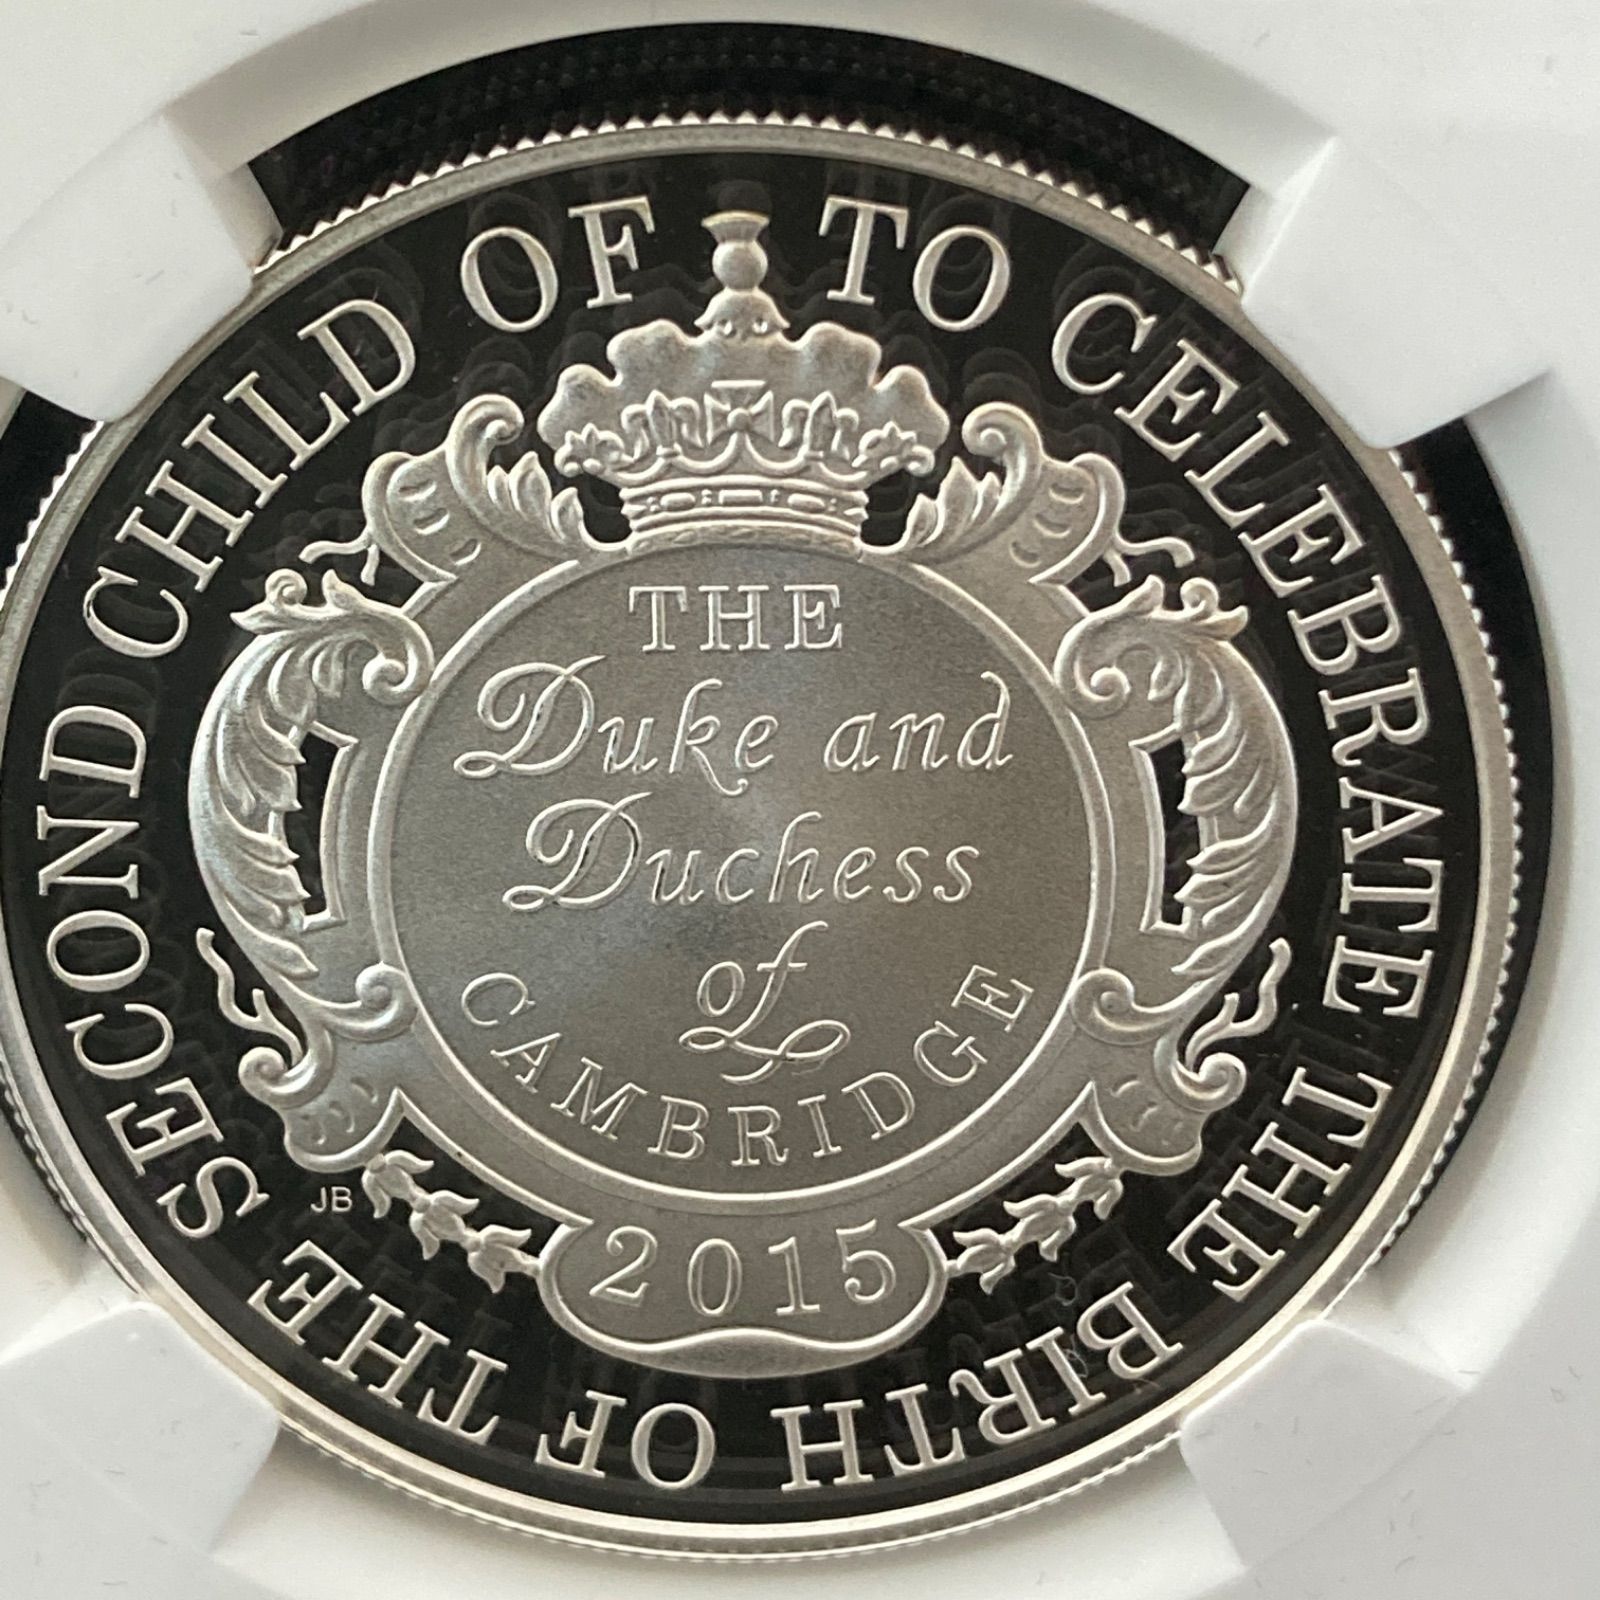 2015 シャーロット王女生誕記念 5ポンド銀貨 NGC GEM PROOF ①種類外国 